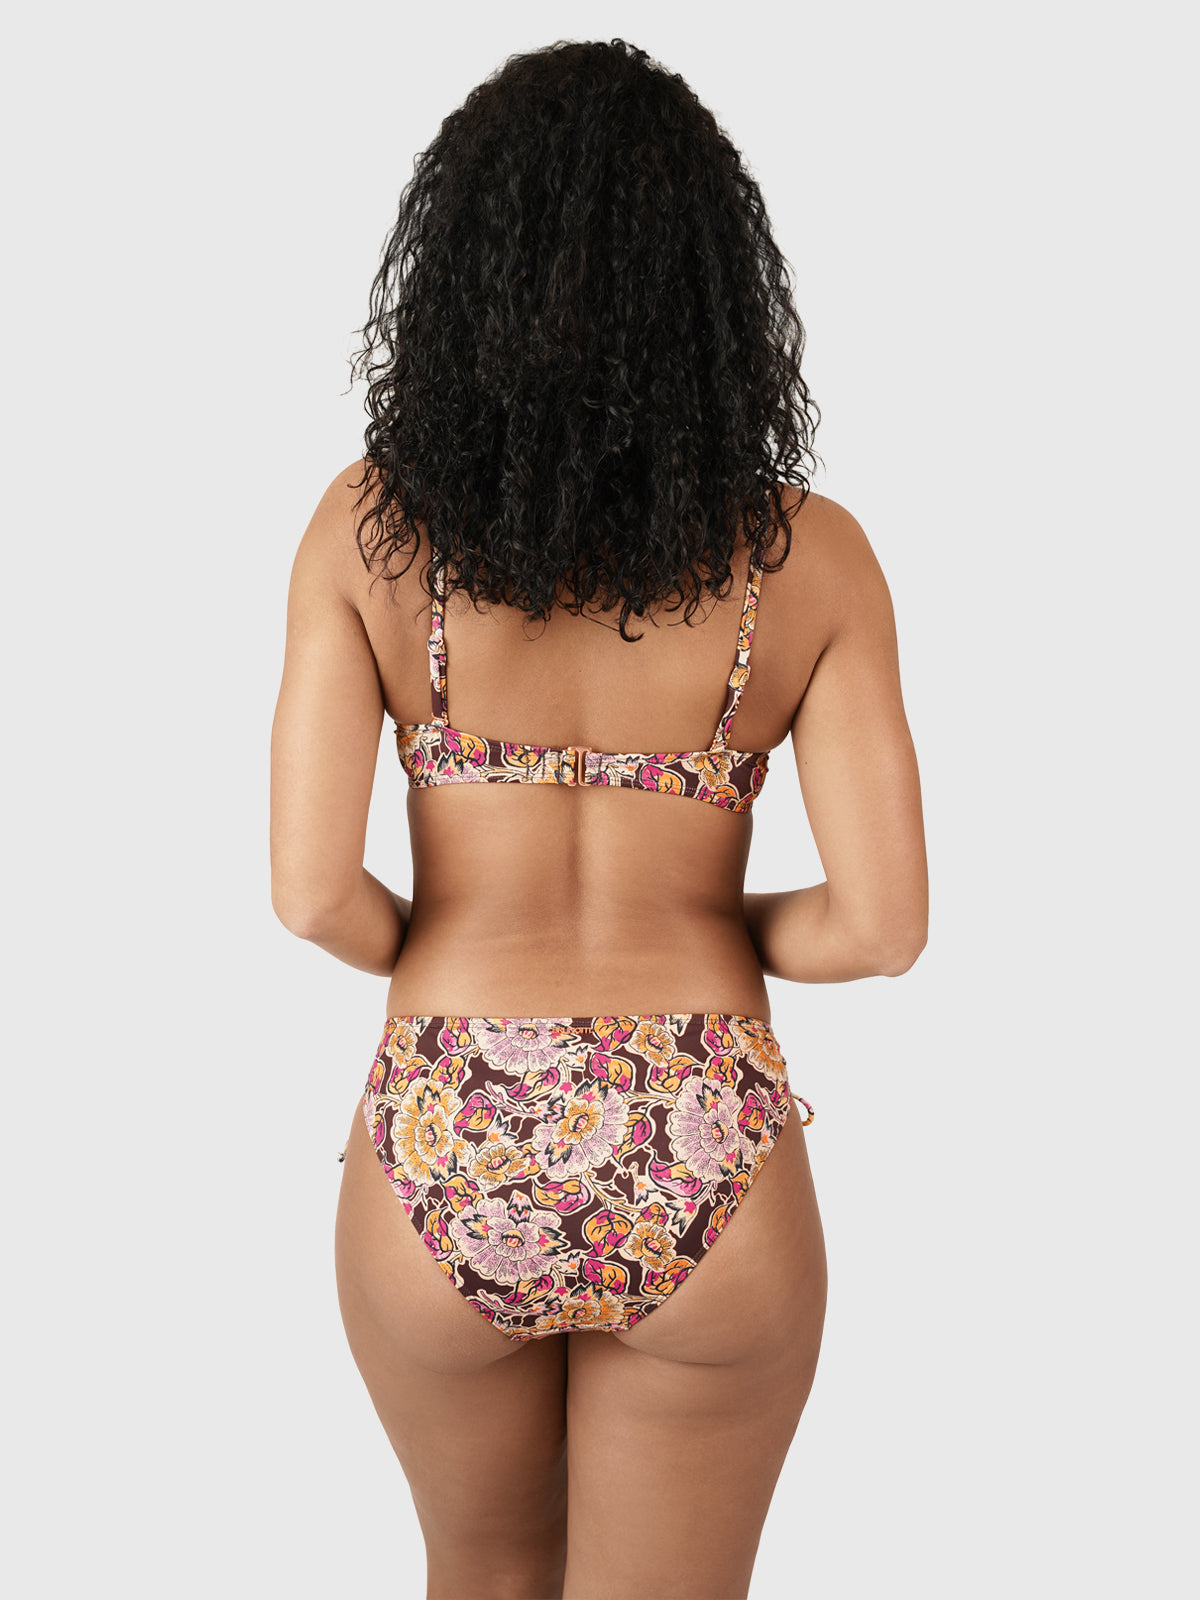 Novasarah-Sakai Damen Bügel Bikini Top | Multi Color